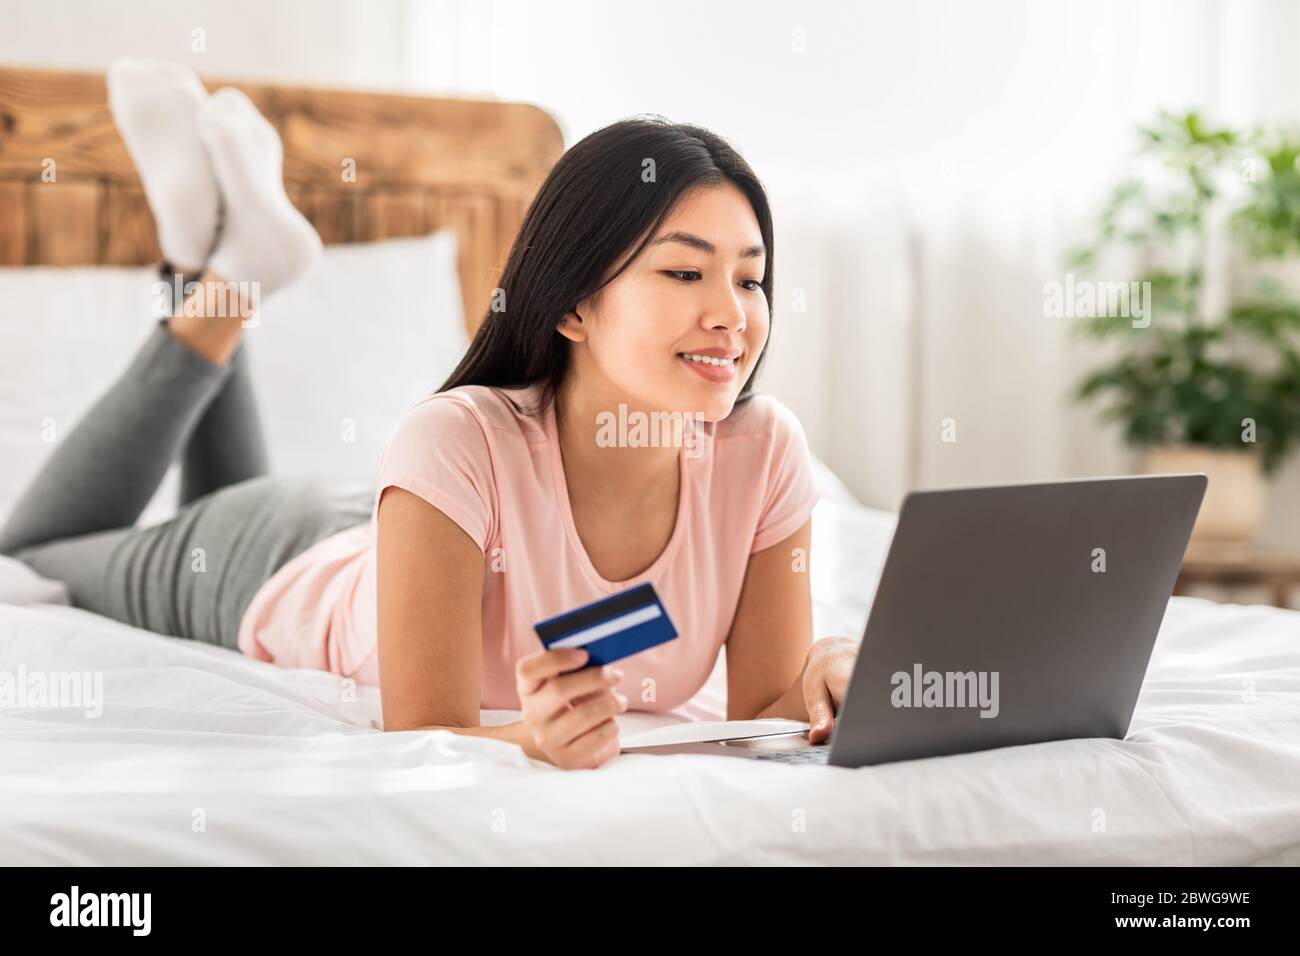 Asiatische Frau Online-Shopping Mit Laptop Liegend Auf Bett Indoor Stockfoto